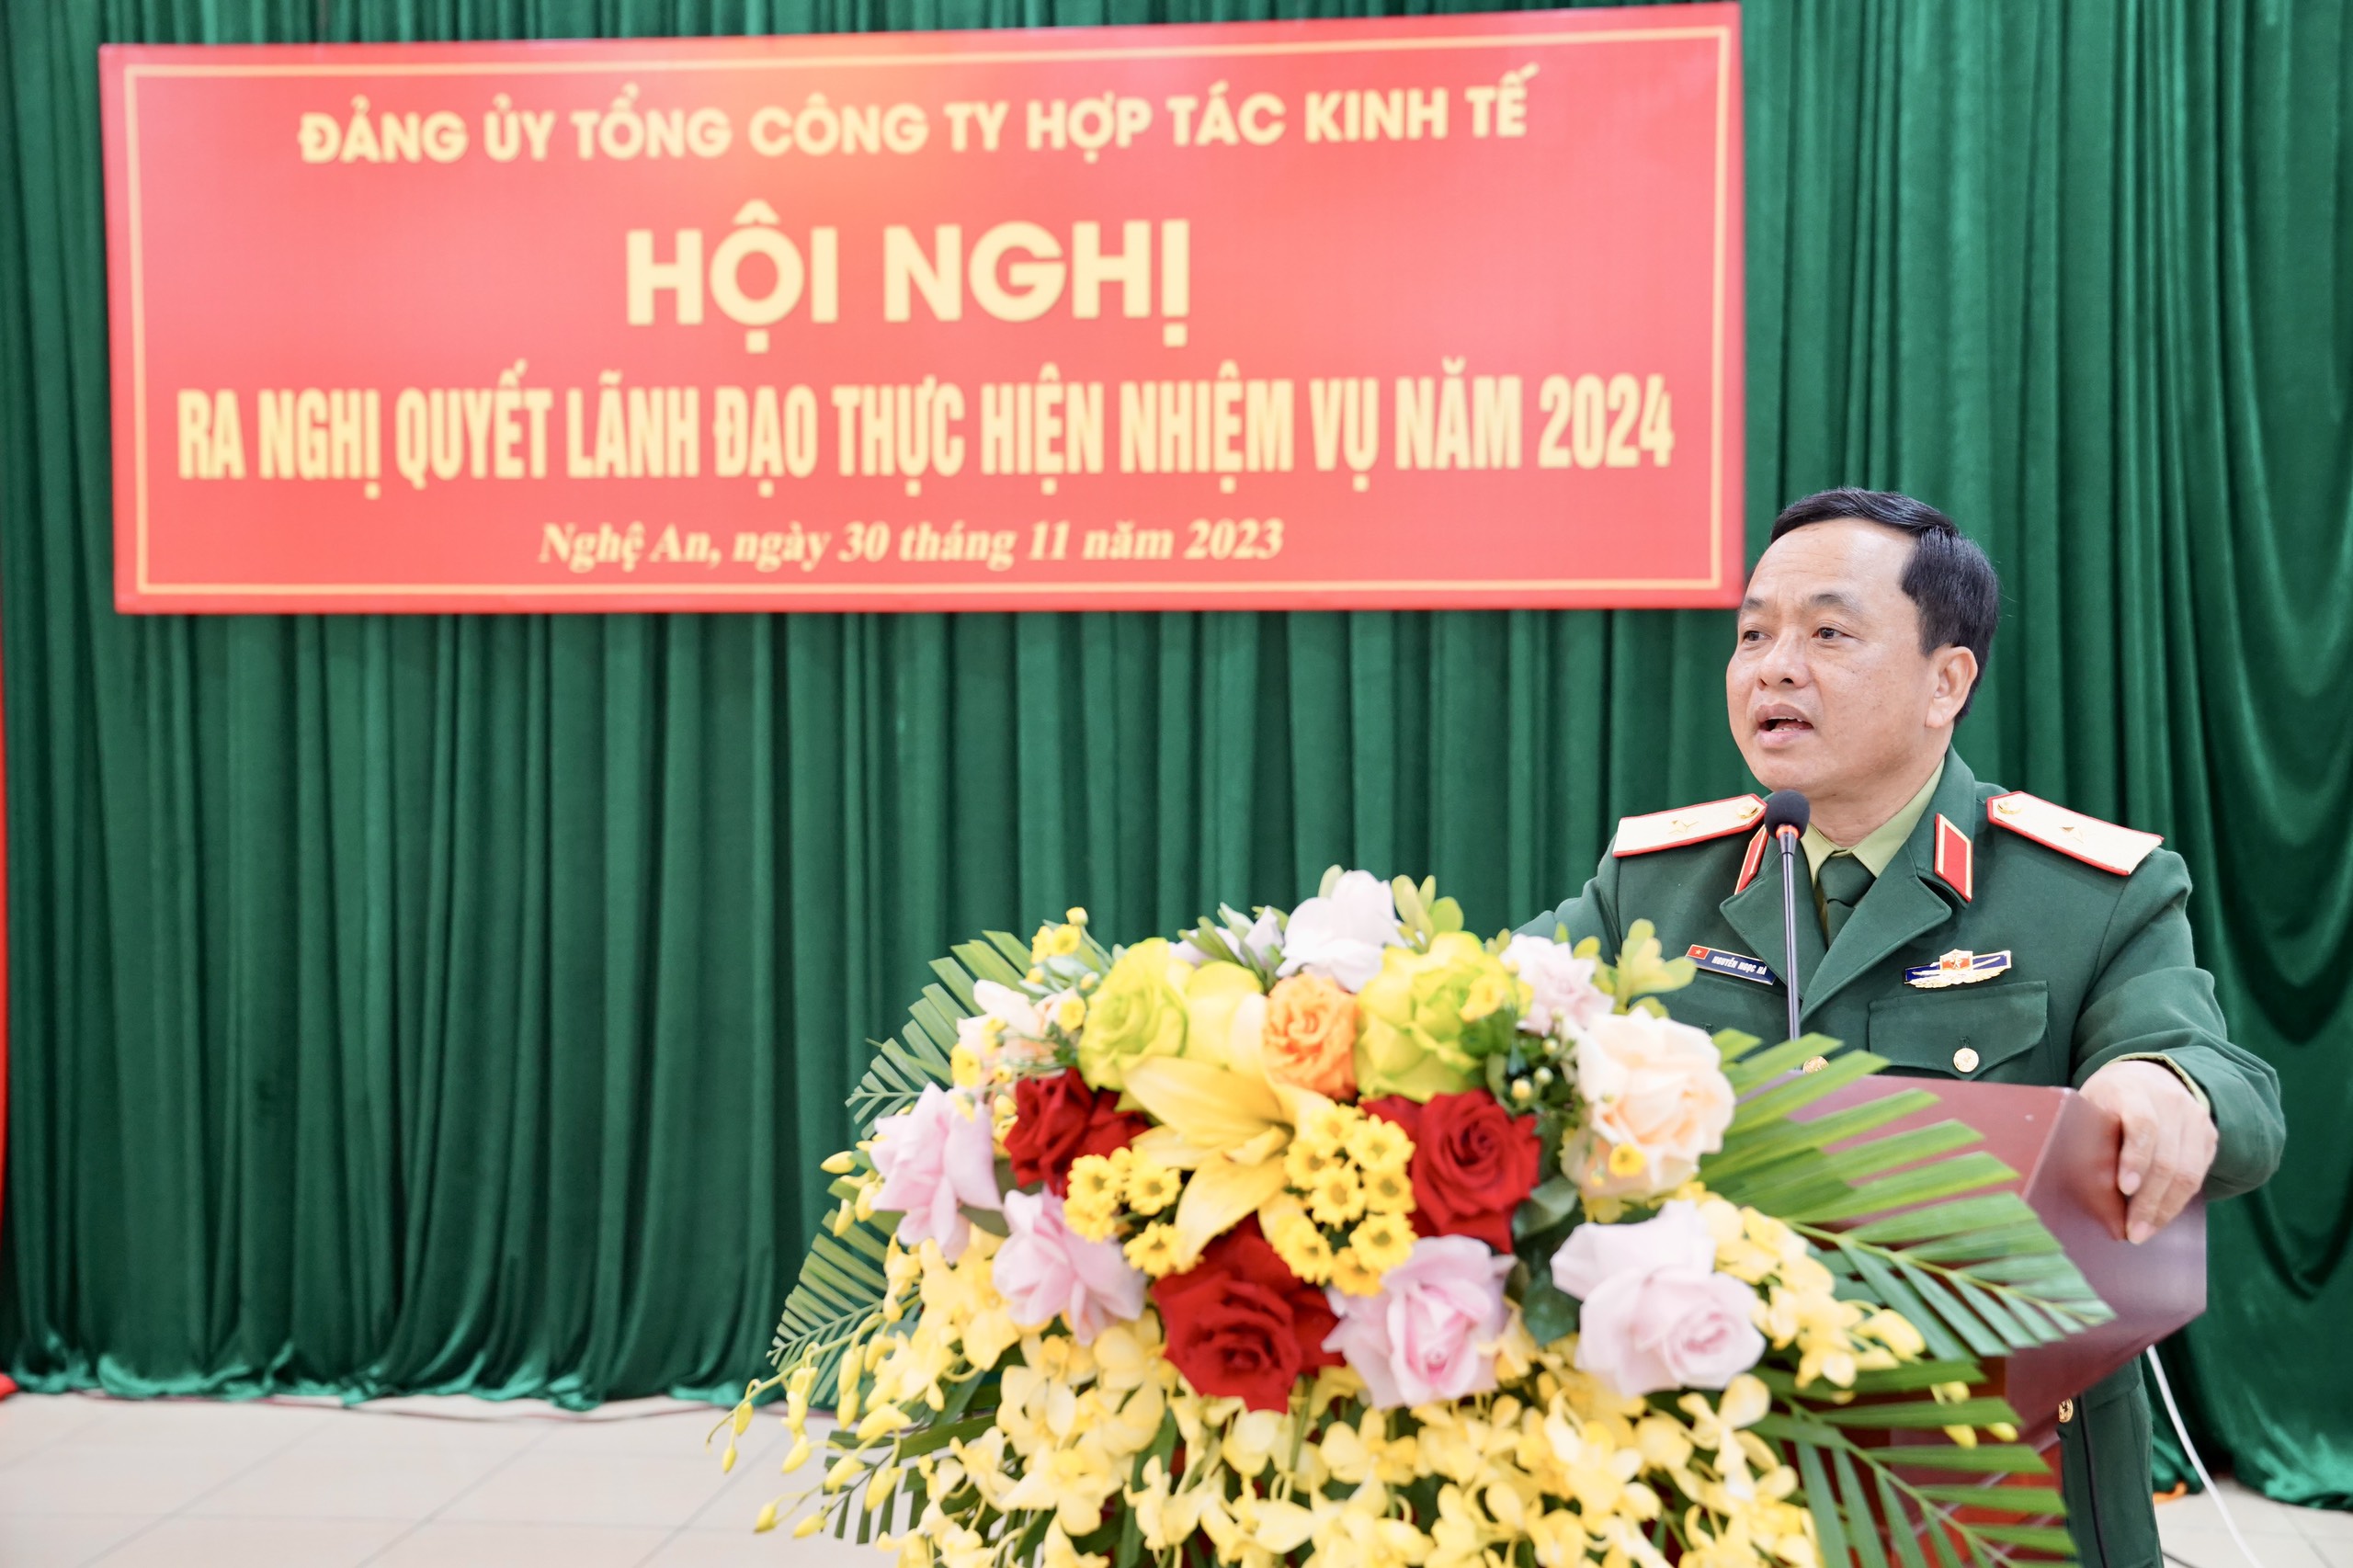 Thiếu tướng Nguyễn Ngọc Hà, Phó Tư lệnh Quân khu dự, chỉ đạo Hội nghị Đảng ủy Tổng công ty Hợp tác kinh tế